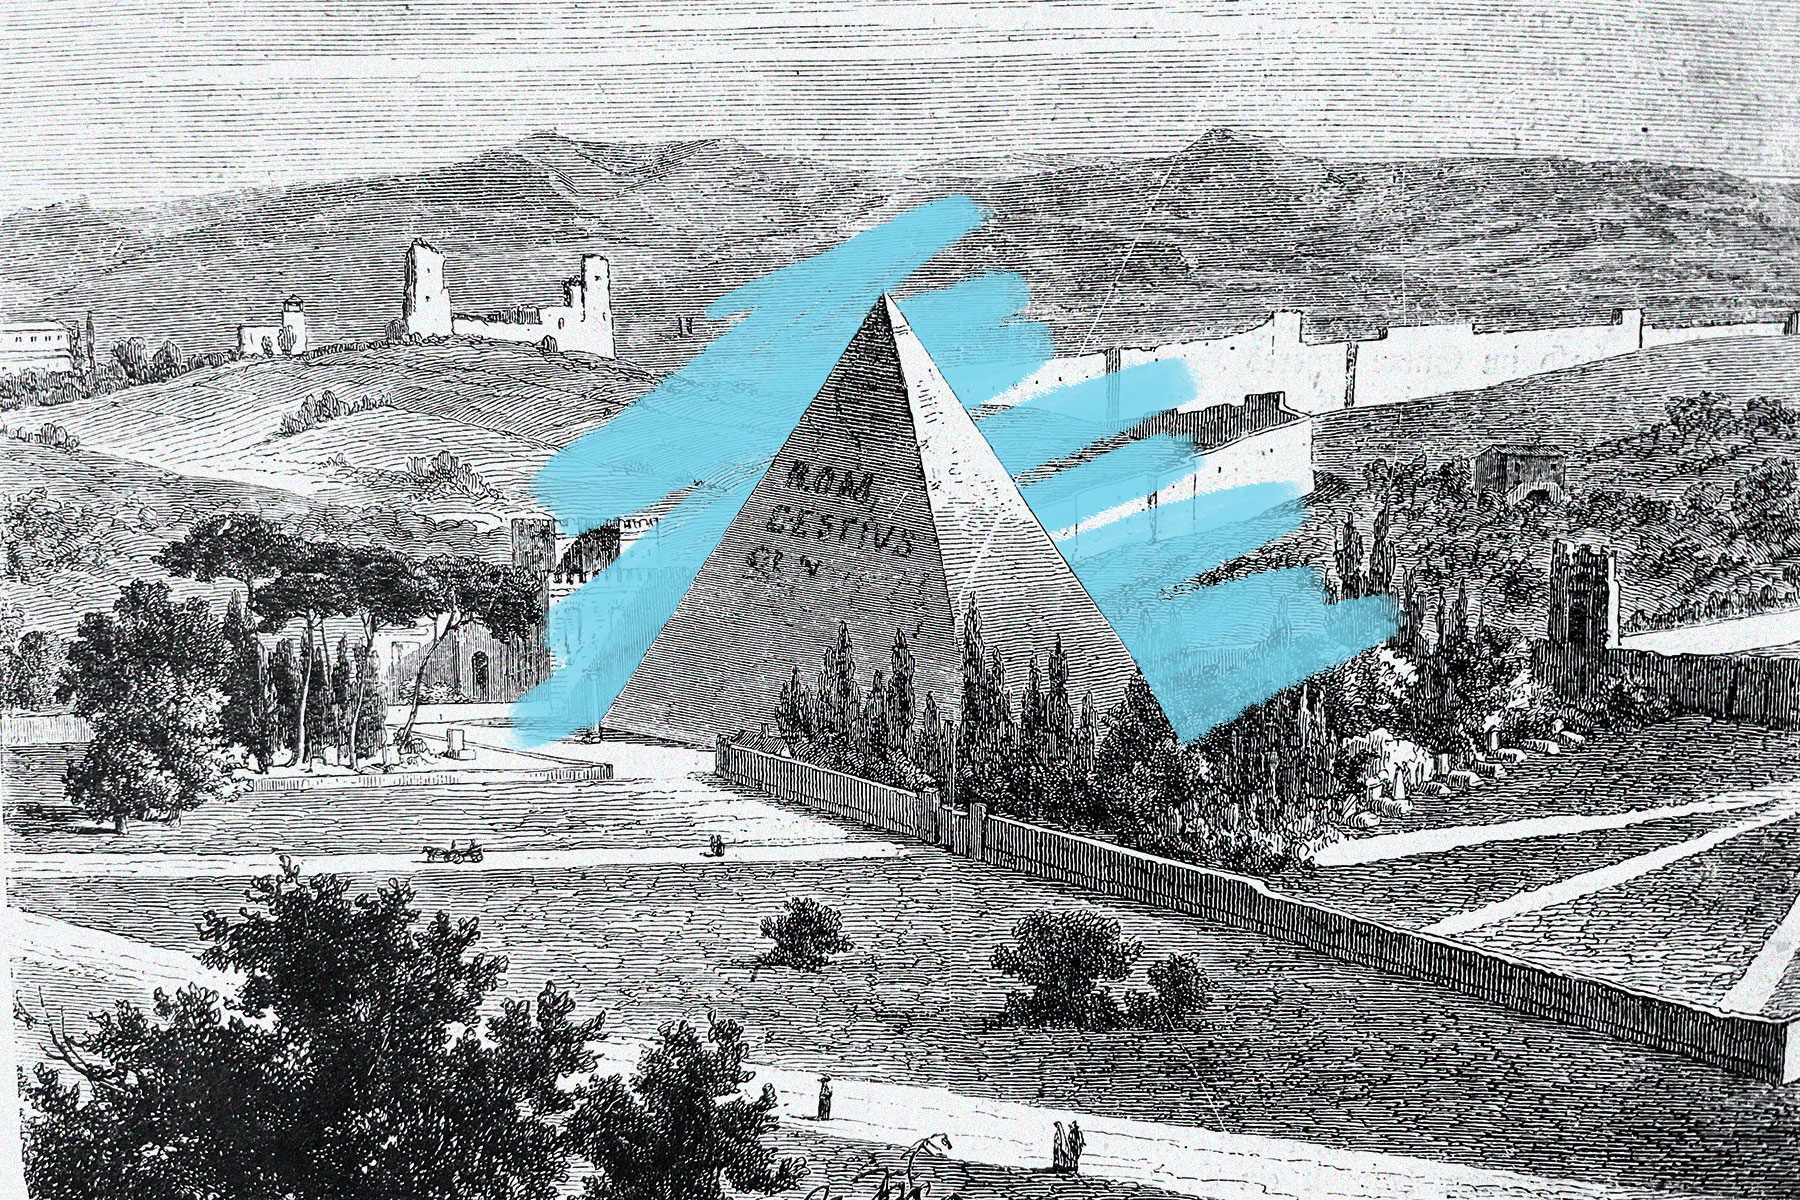 Pyramid of Caius Cestius